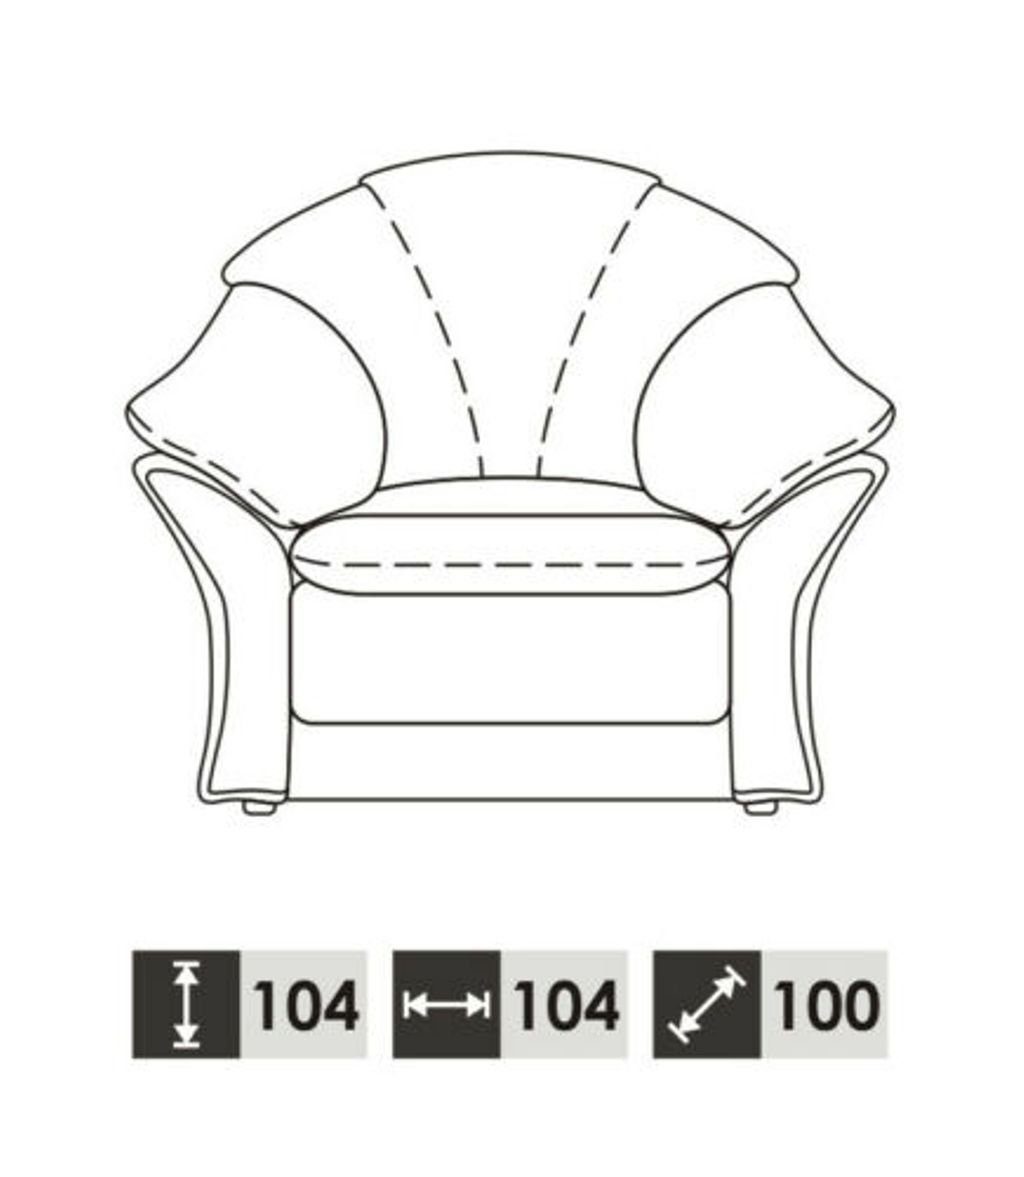 JVmoebel Sofa Klassische Wohnzimmer Garnitur in Europe Vollleder 3+1 100% Made Couch